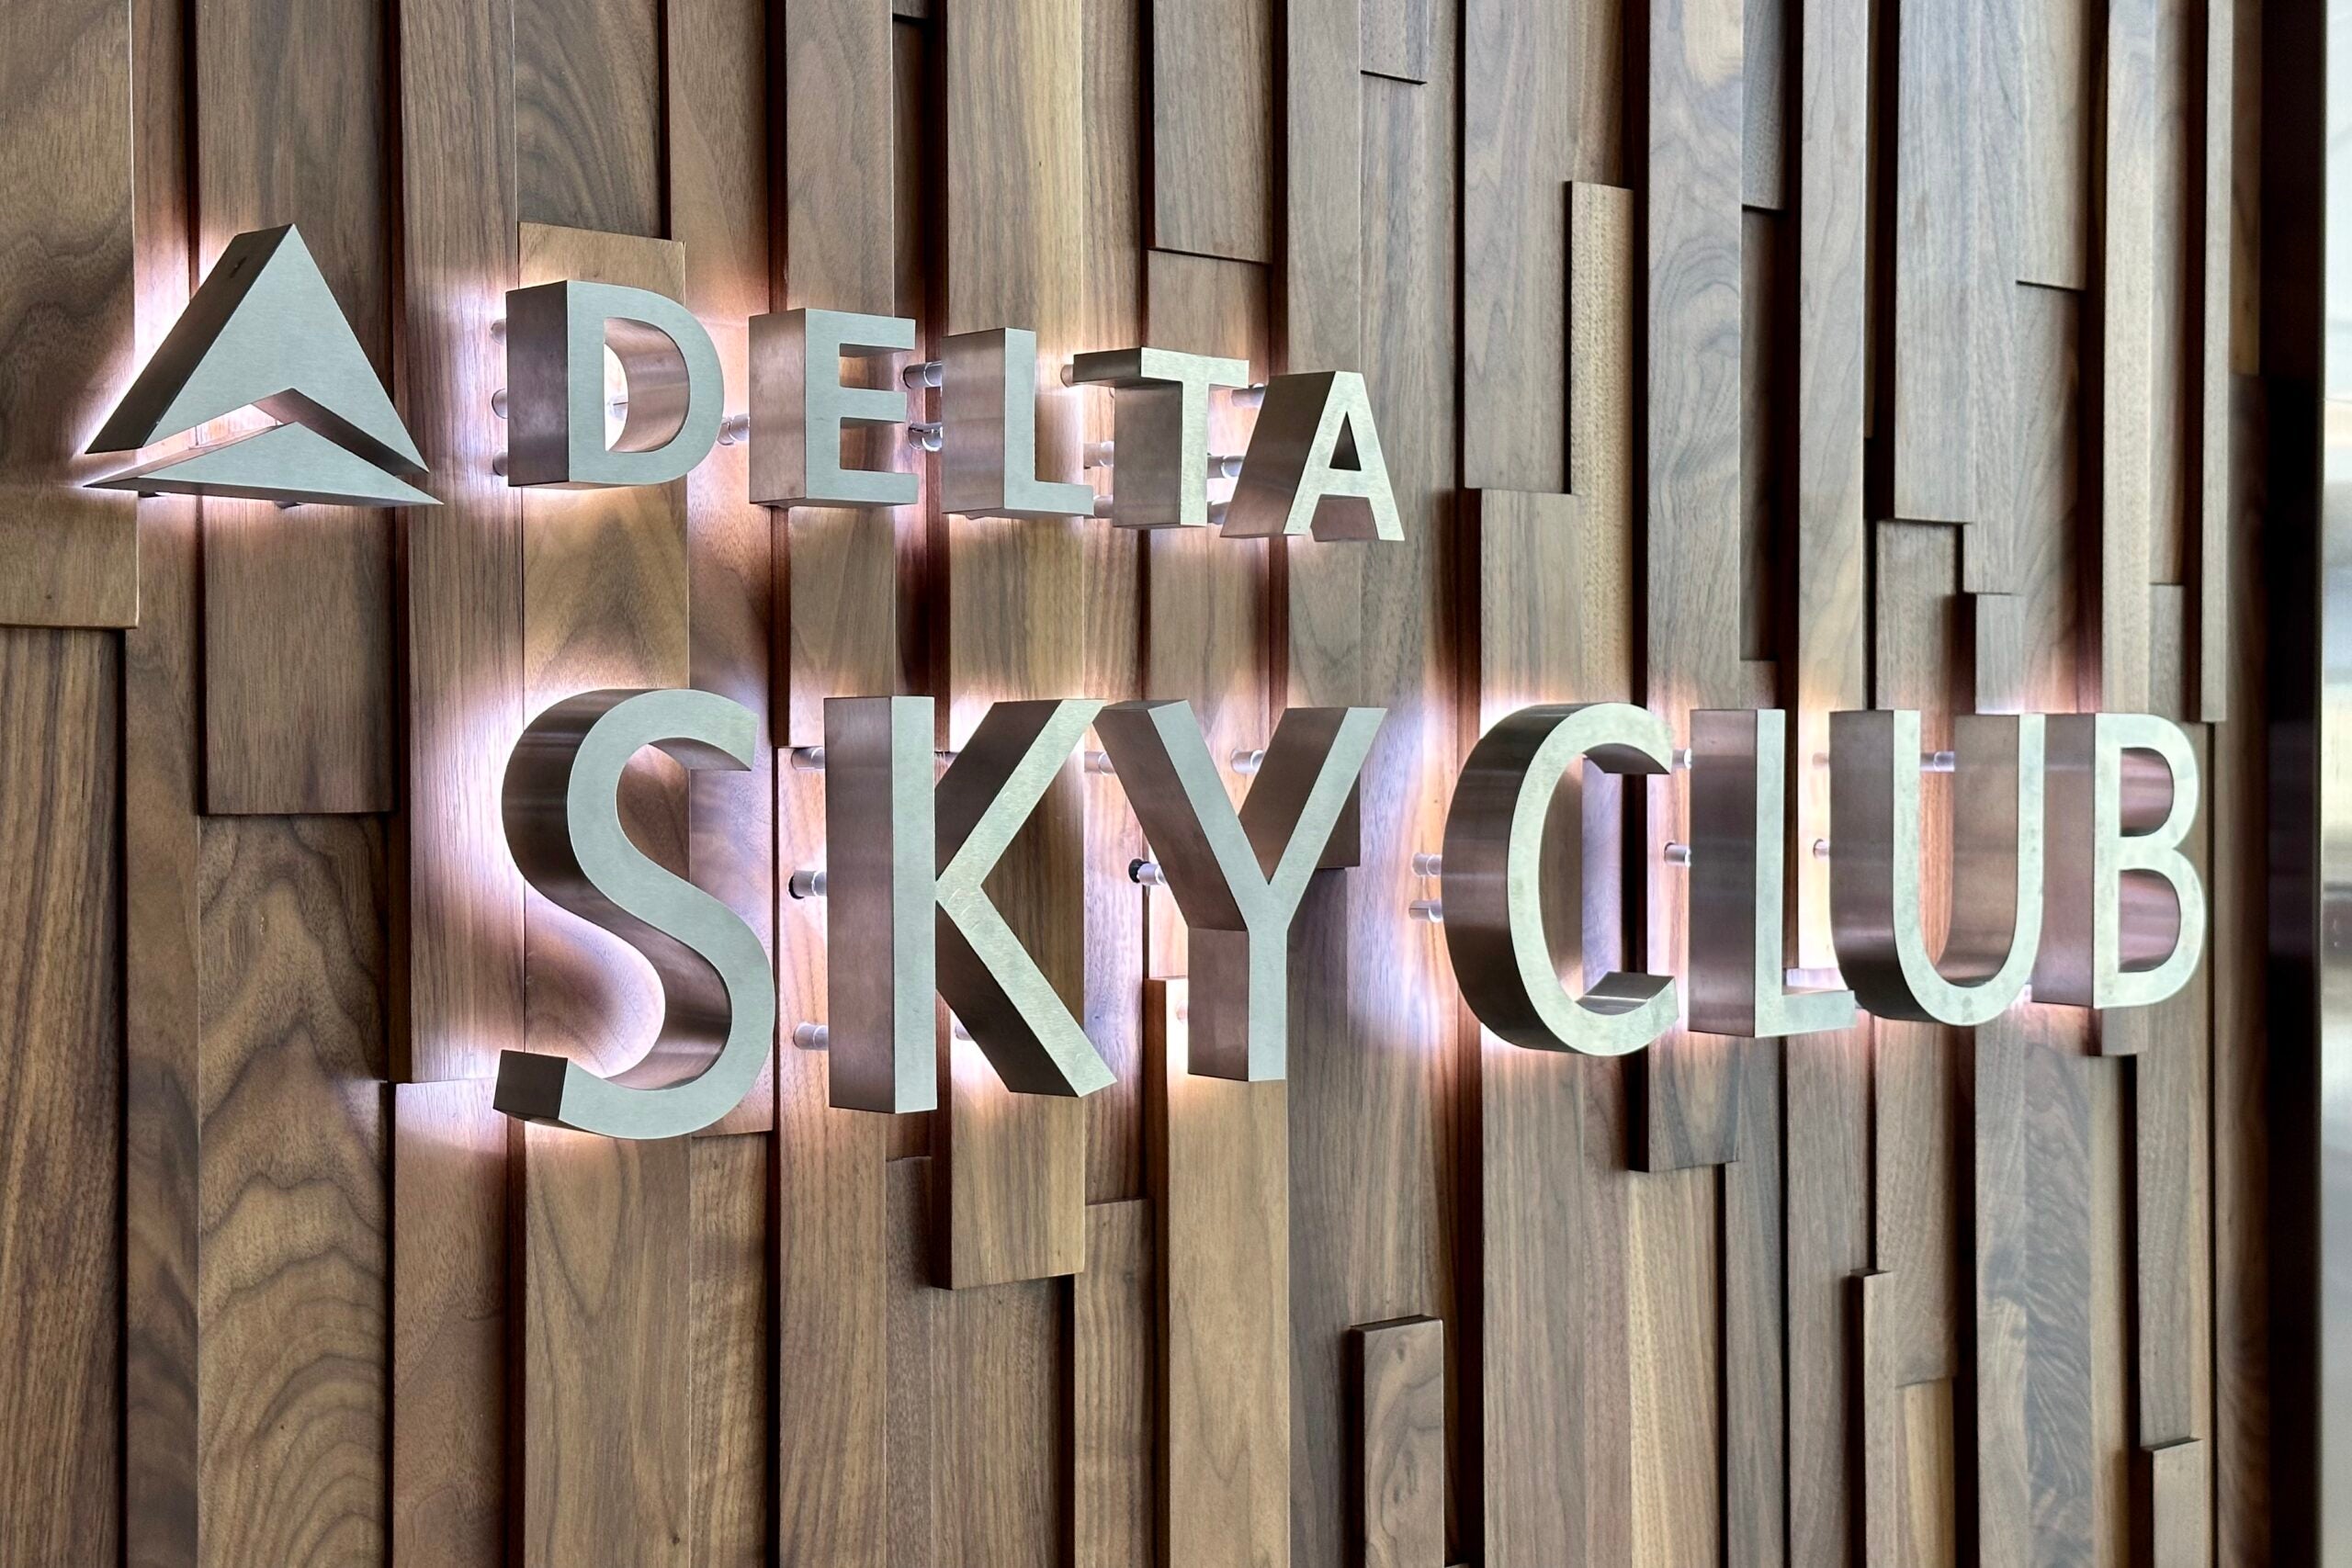 Delta sky club sign